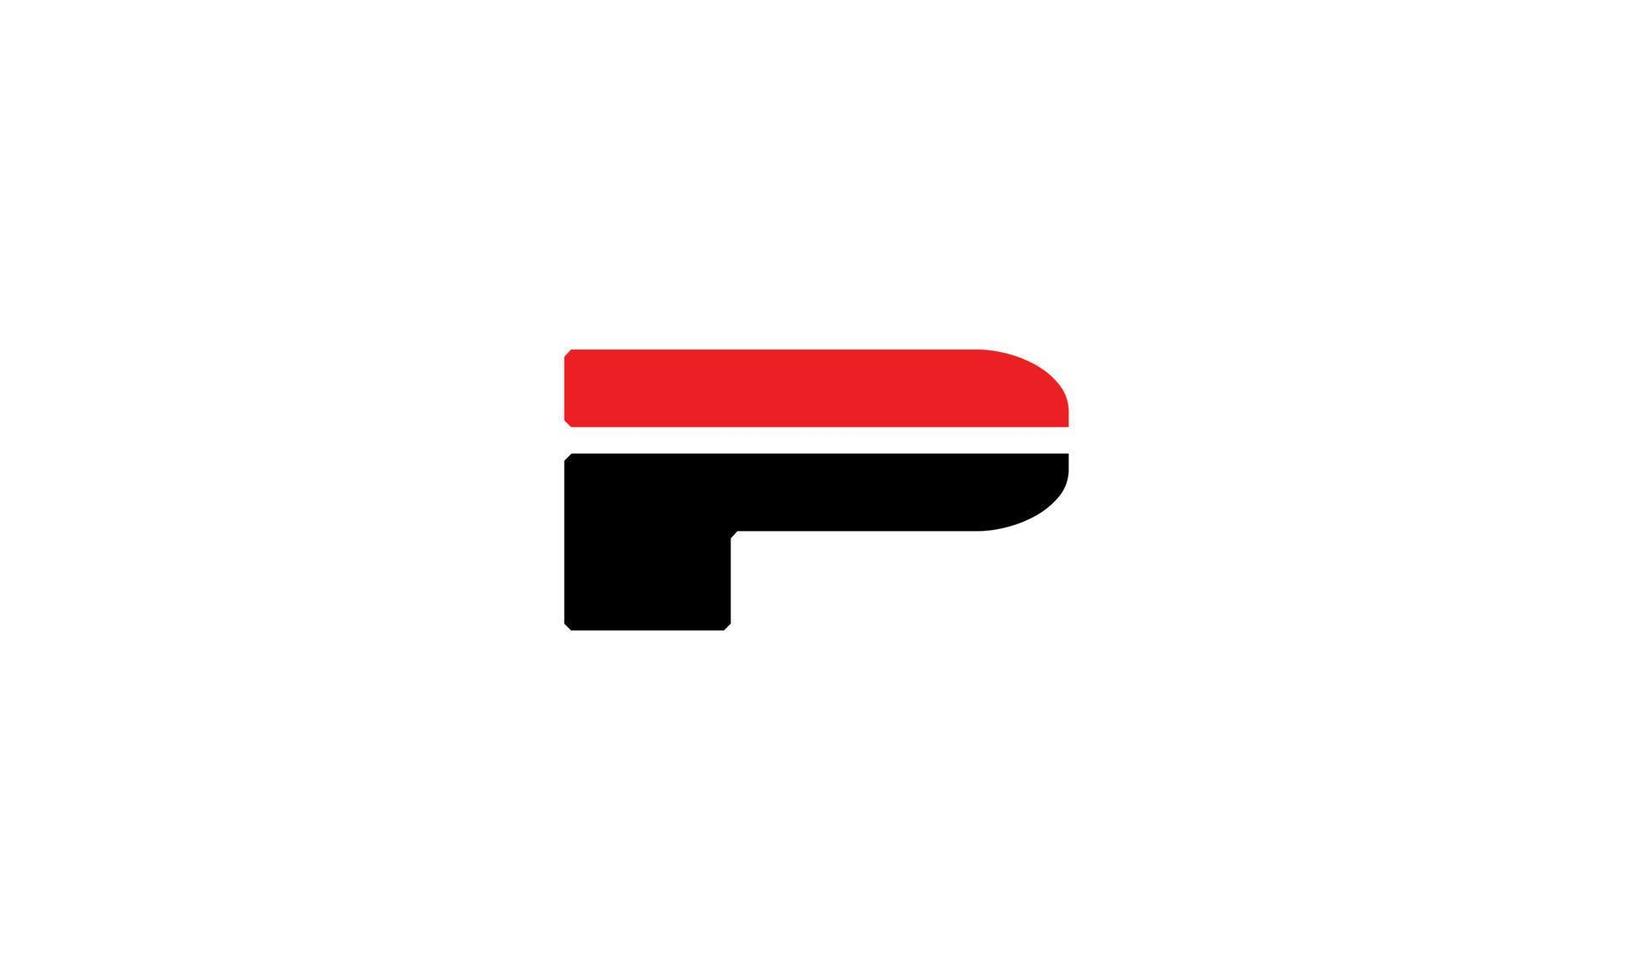 plantilla de vector libre de diseño de logotipo de letra p.